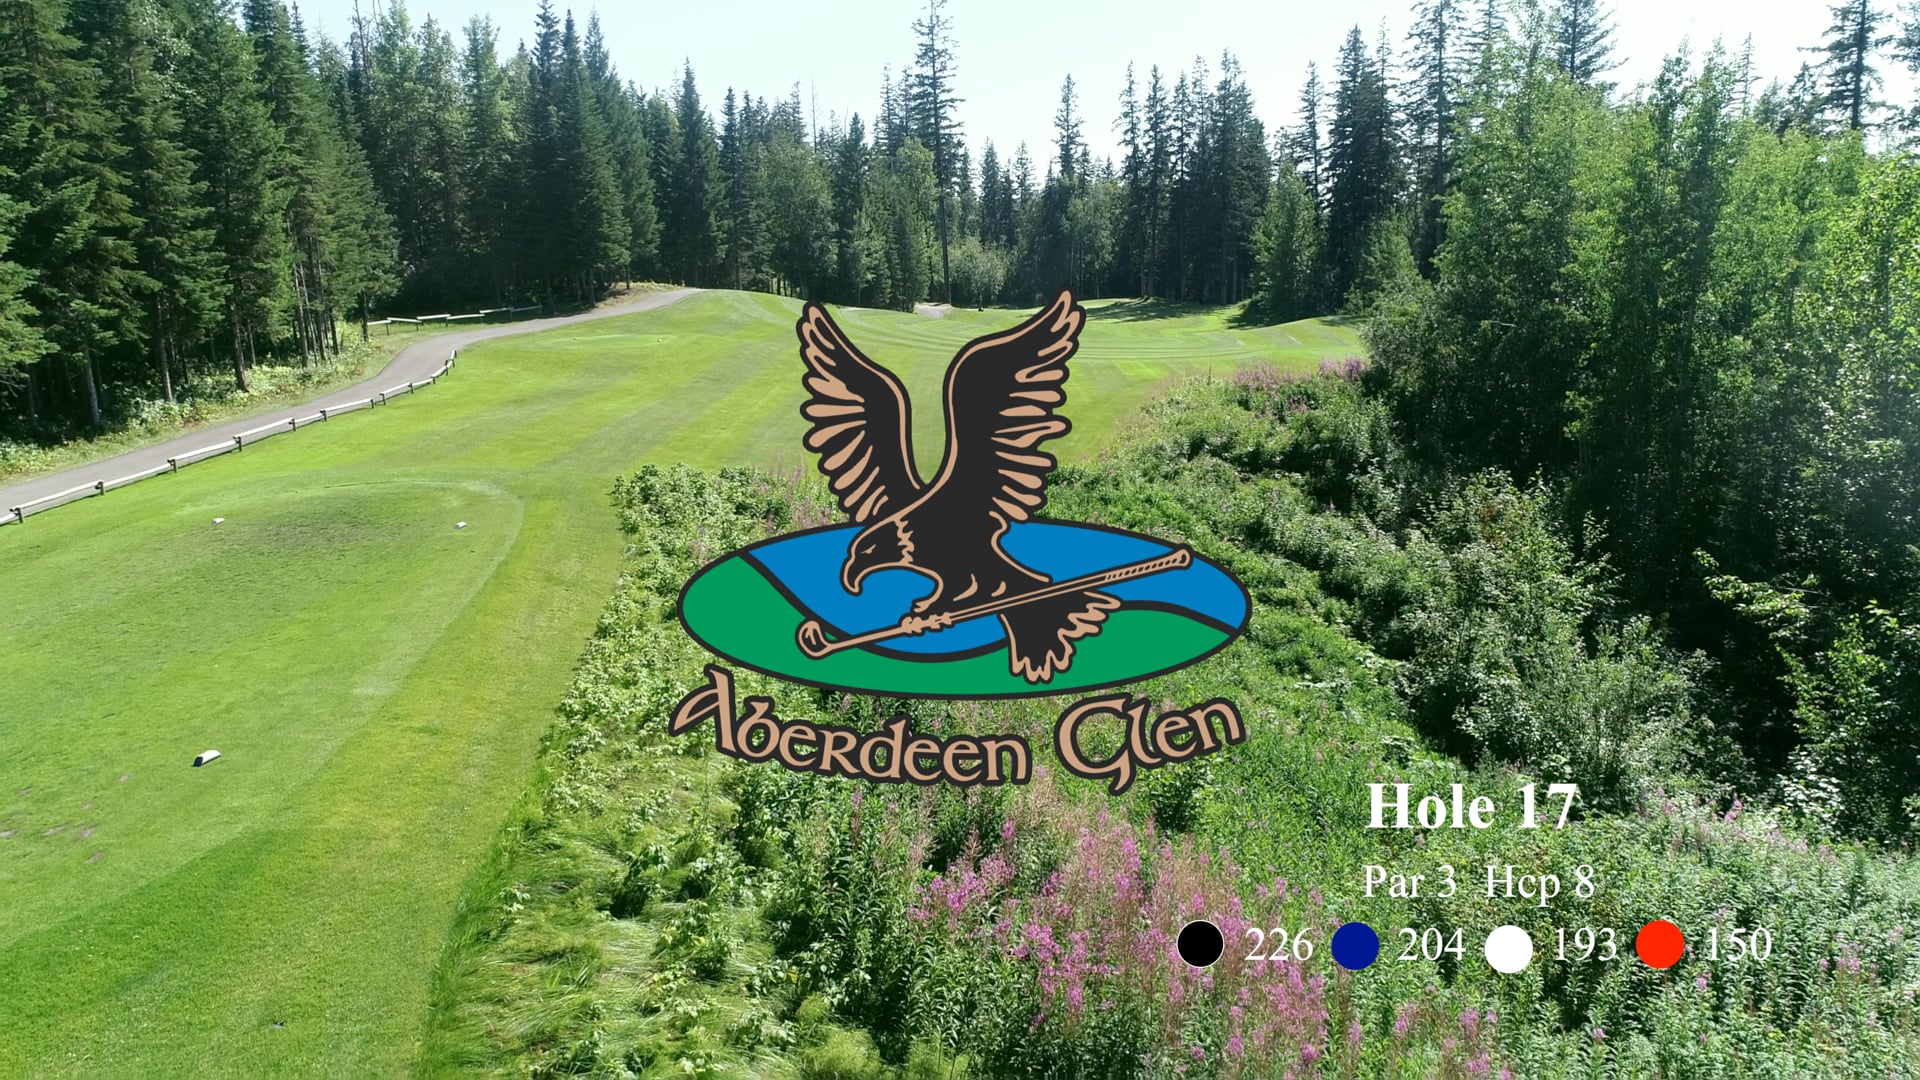 Aberdeen Glen Hole #17